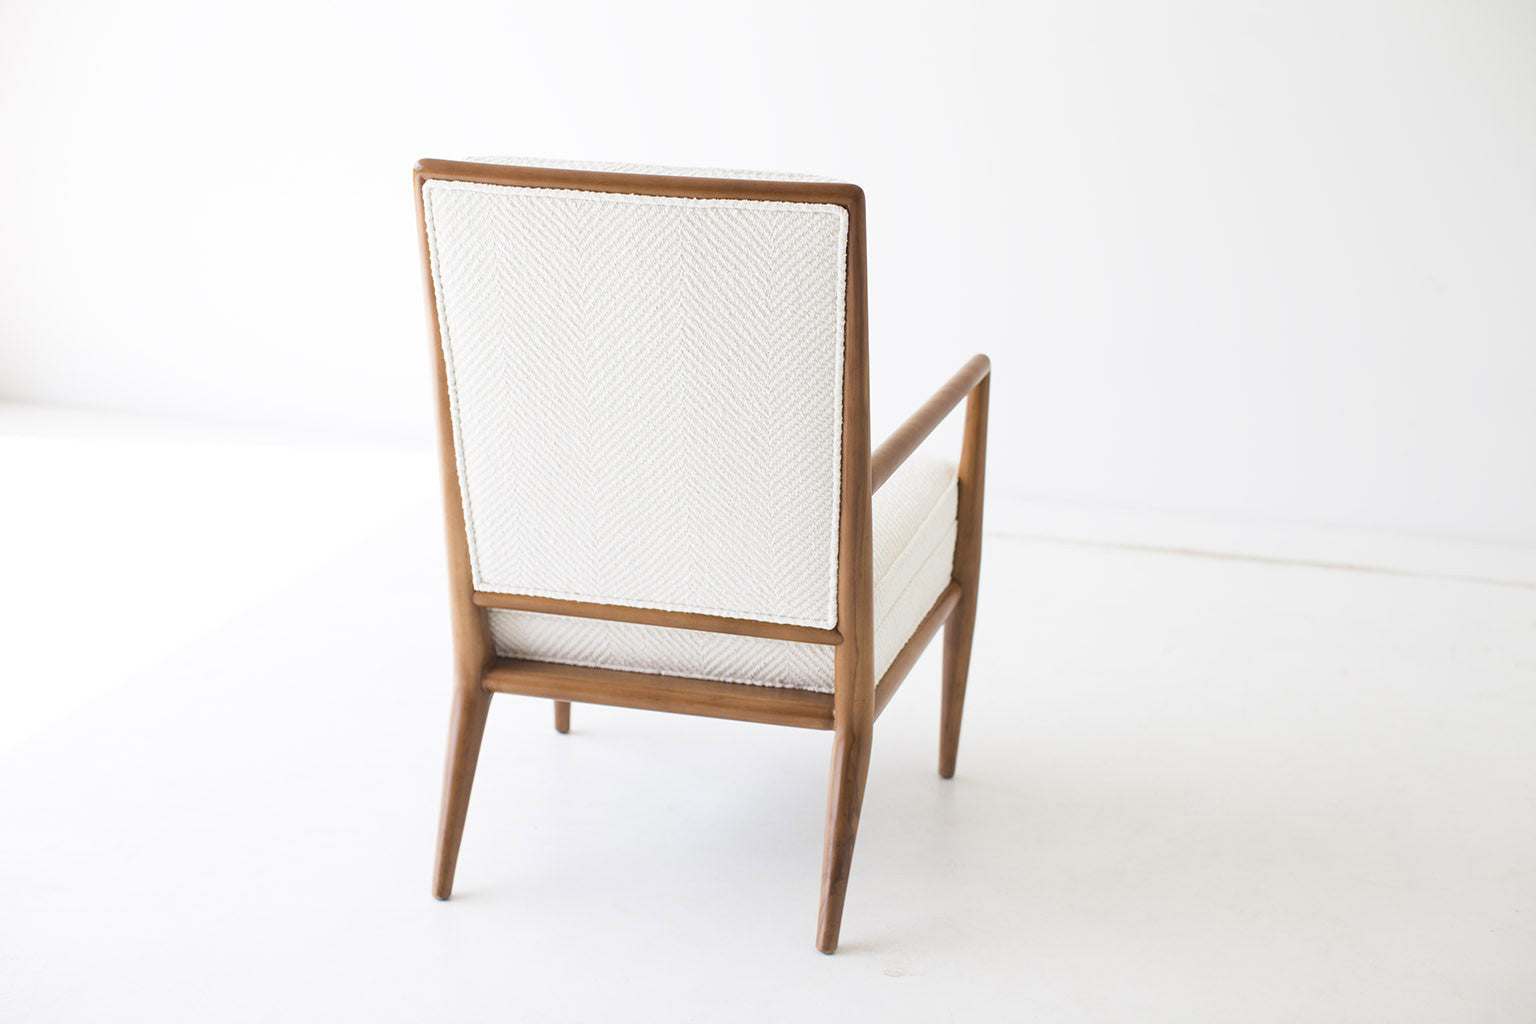 TH Robsjohn-Gibbings Lounge Chair for Widdicomb - 01151602